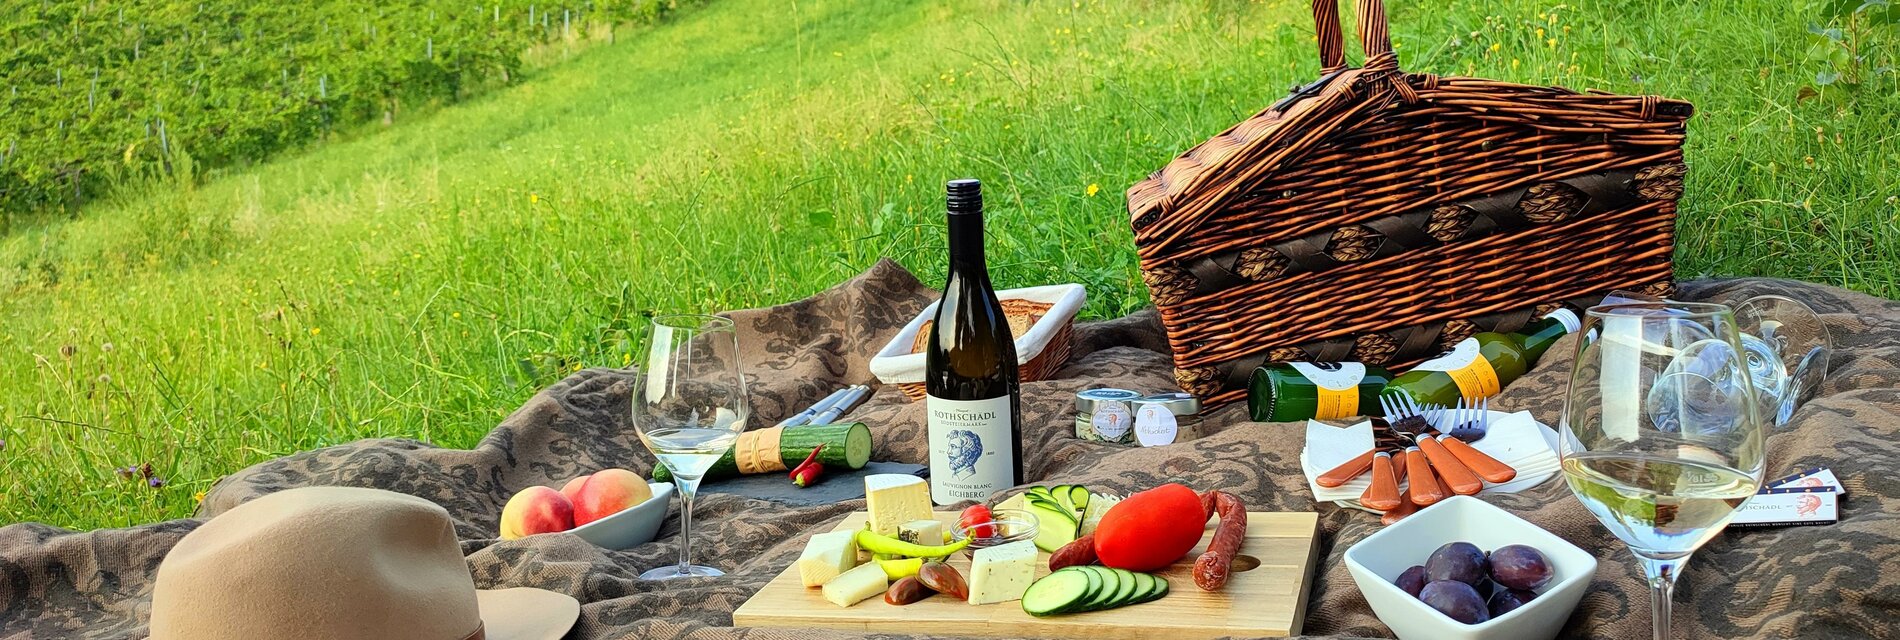 Picknick-Weingarten-Suedsteiermark-Leutschach-Wein